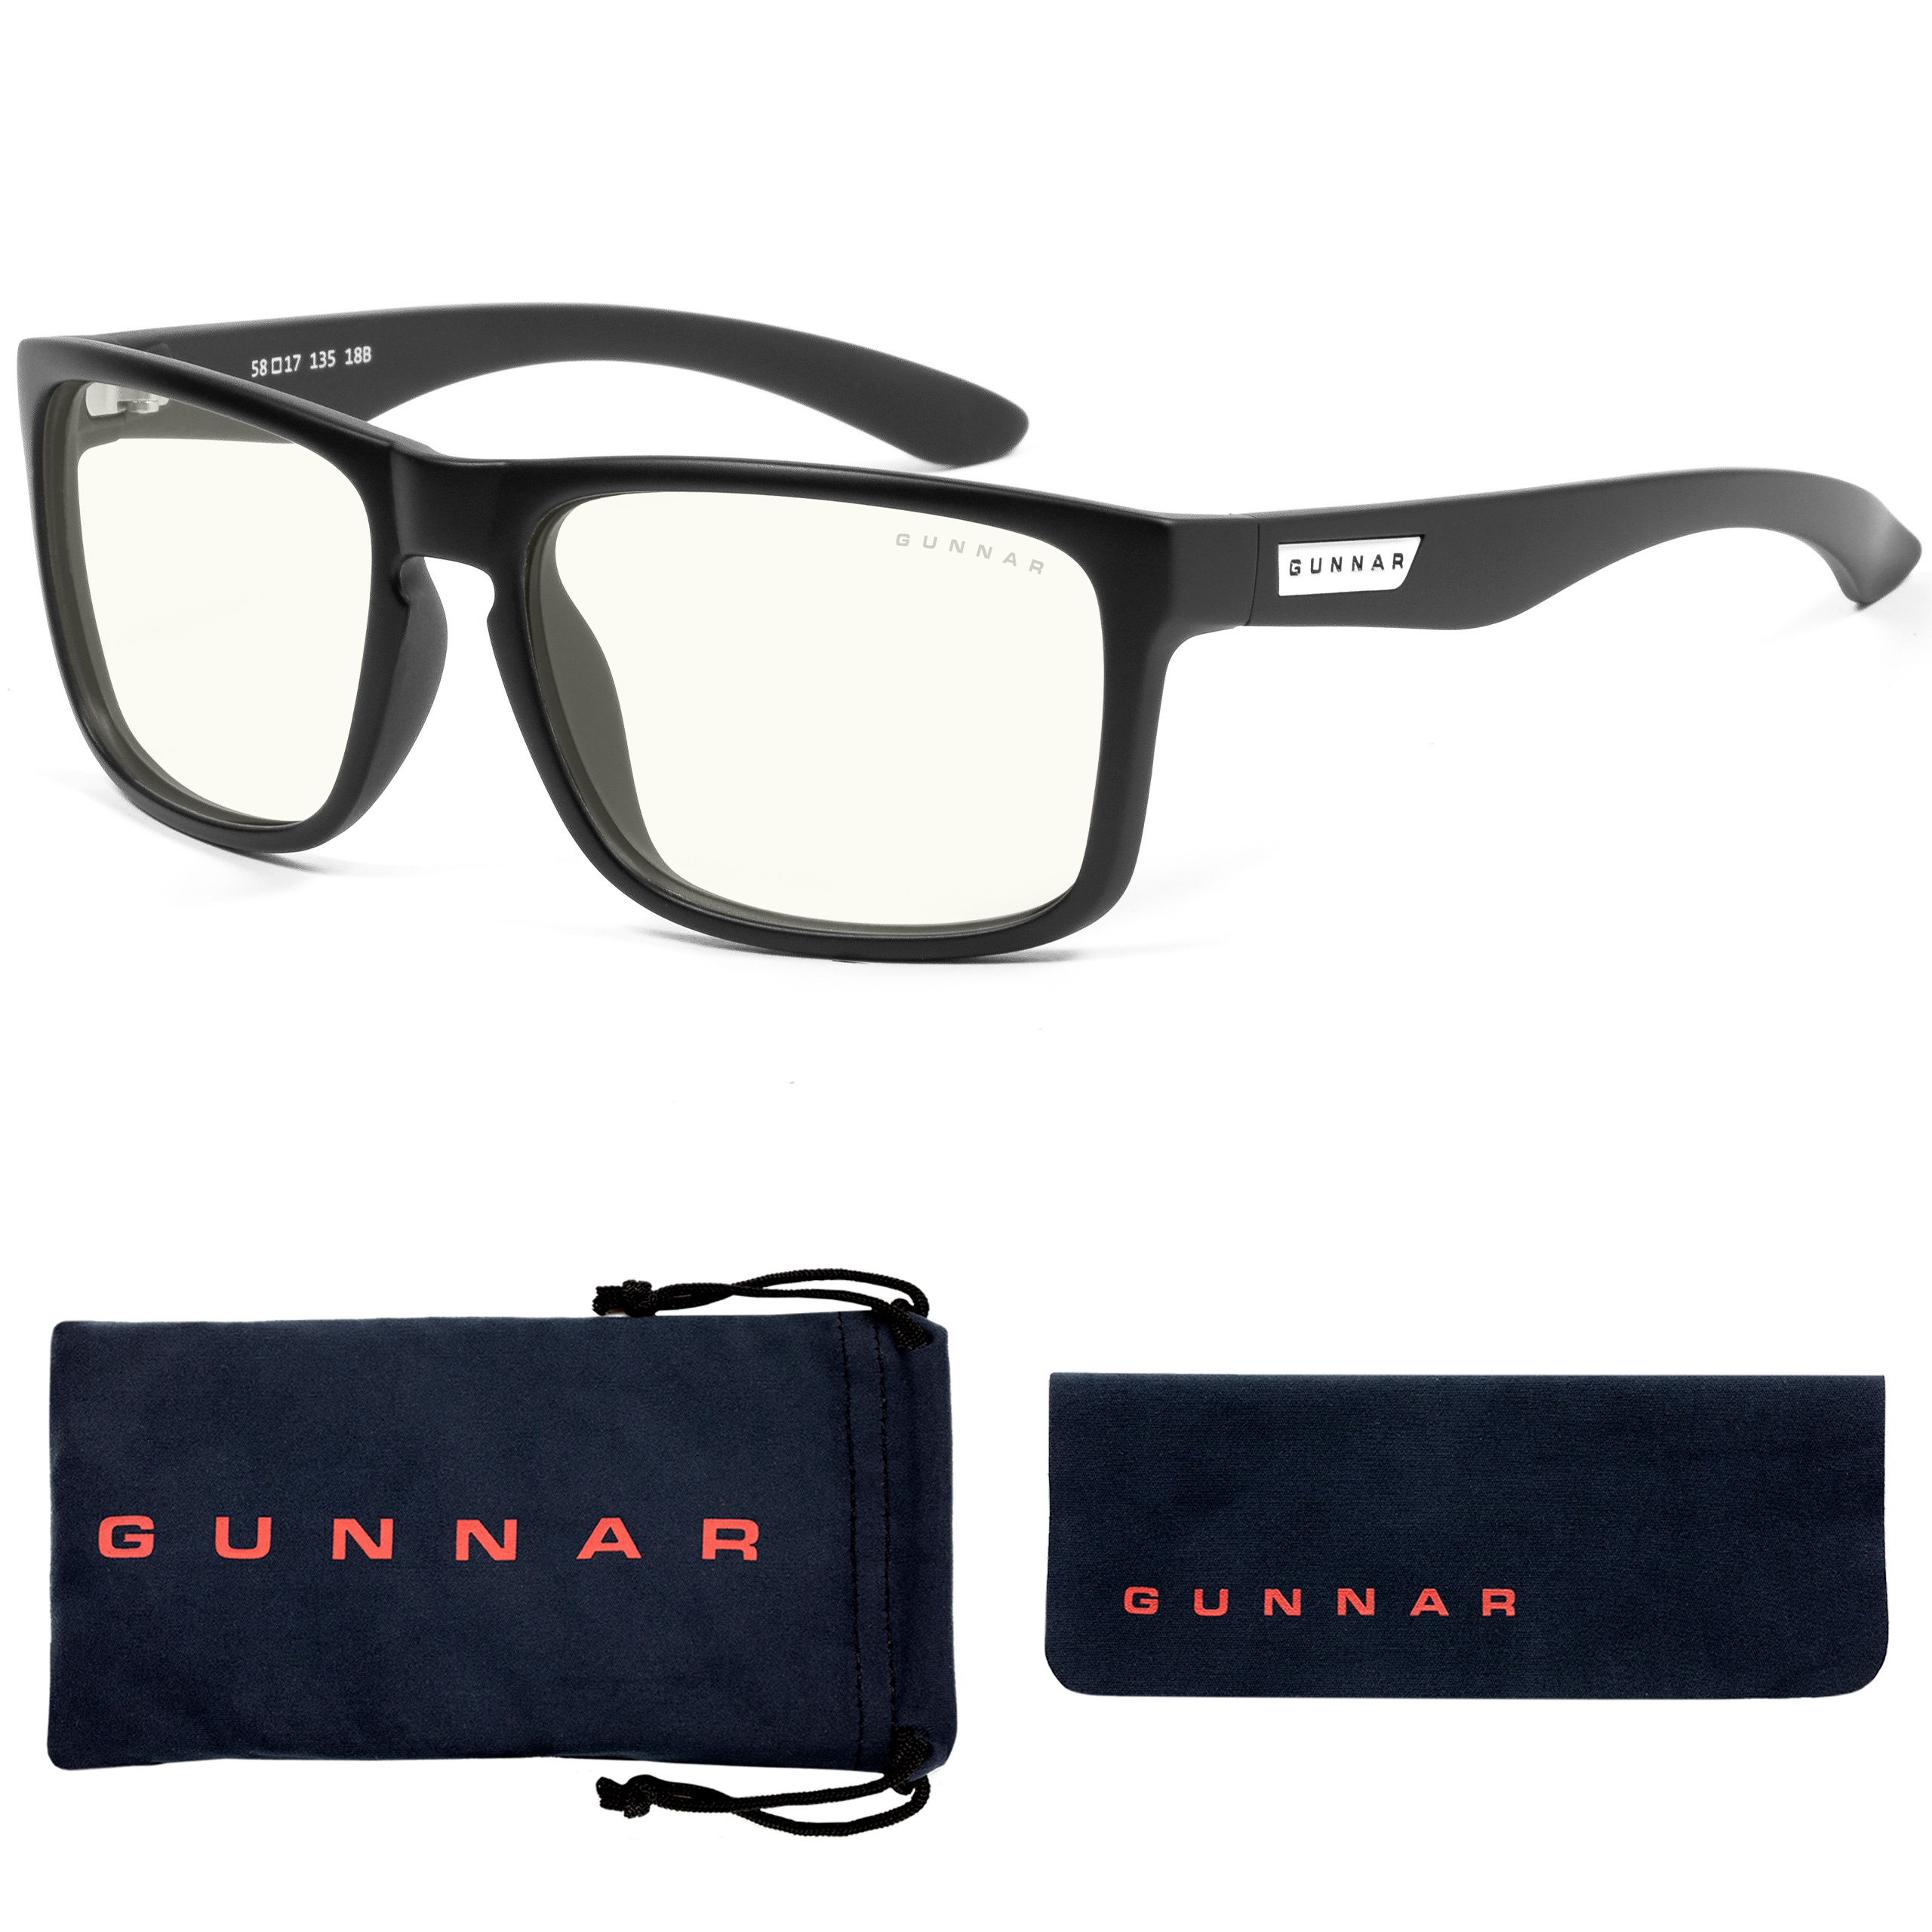 GUNNAR Intercept, Onyx Clear Brille Blaulichtfilter, Premium, Tönung, Rahmen, Gaming UV-Schutz